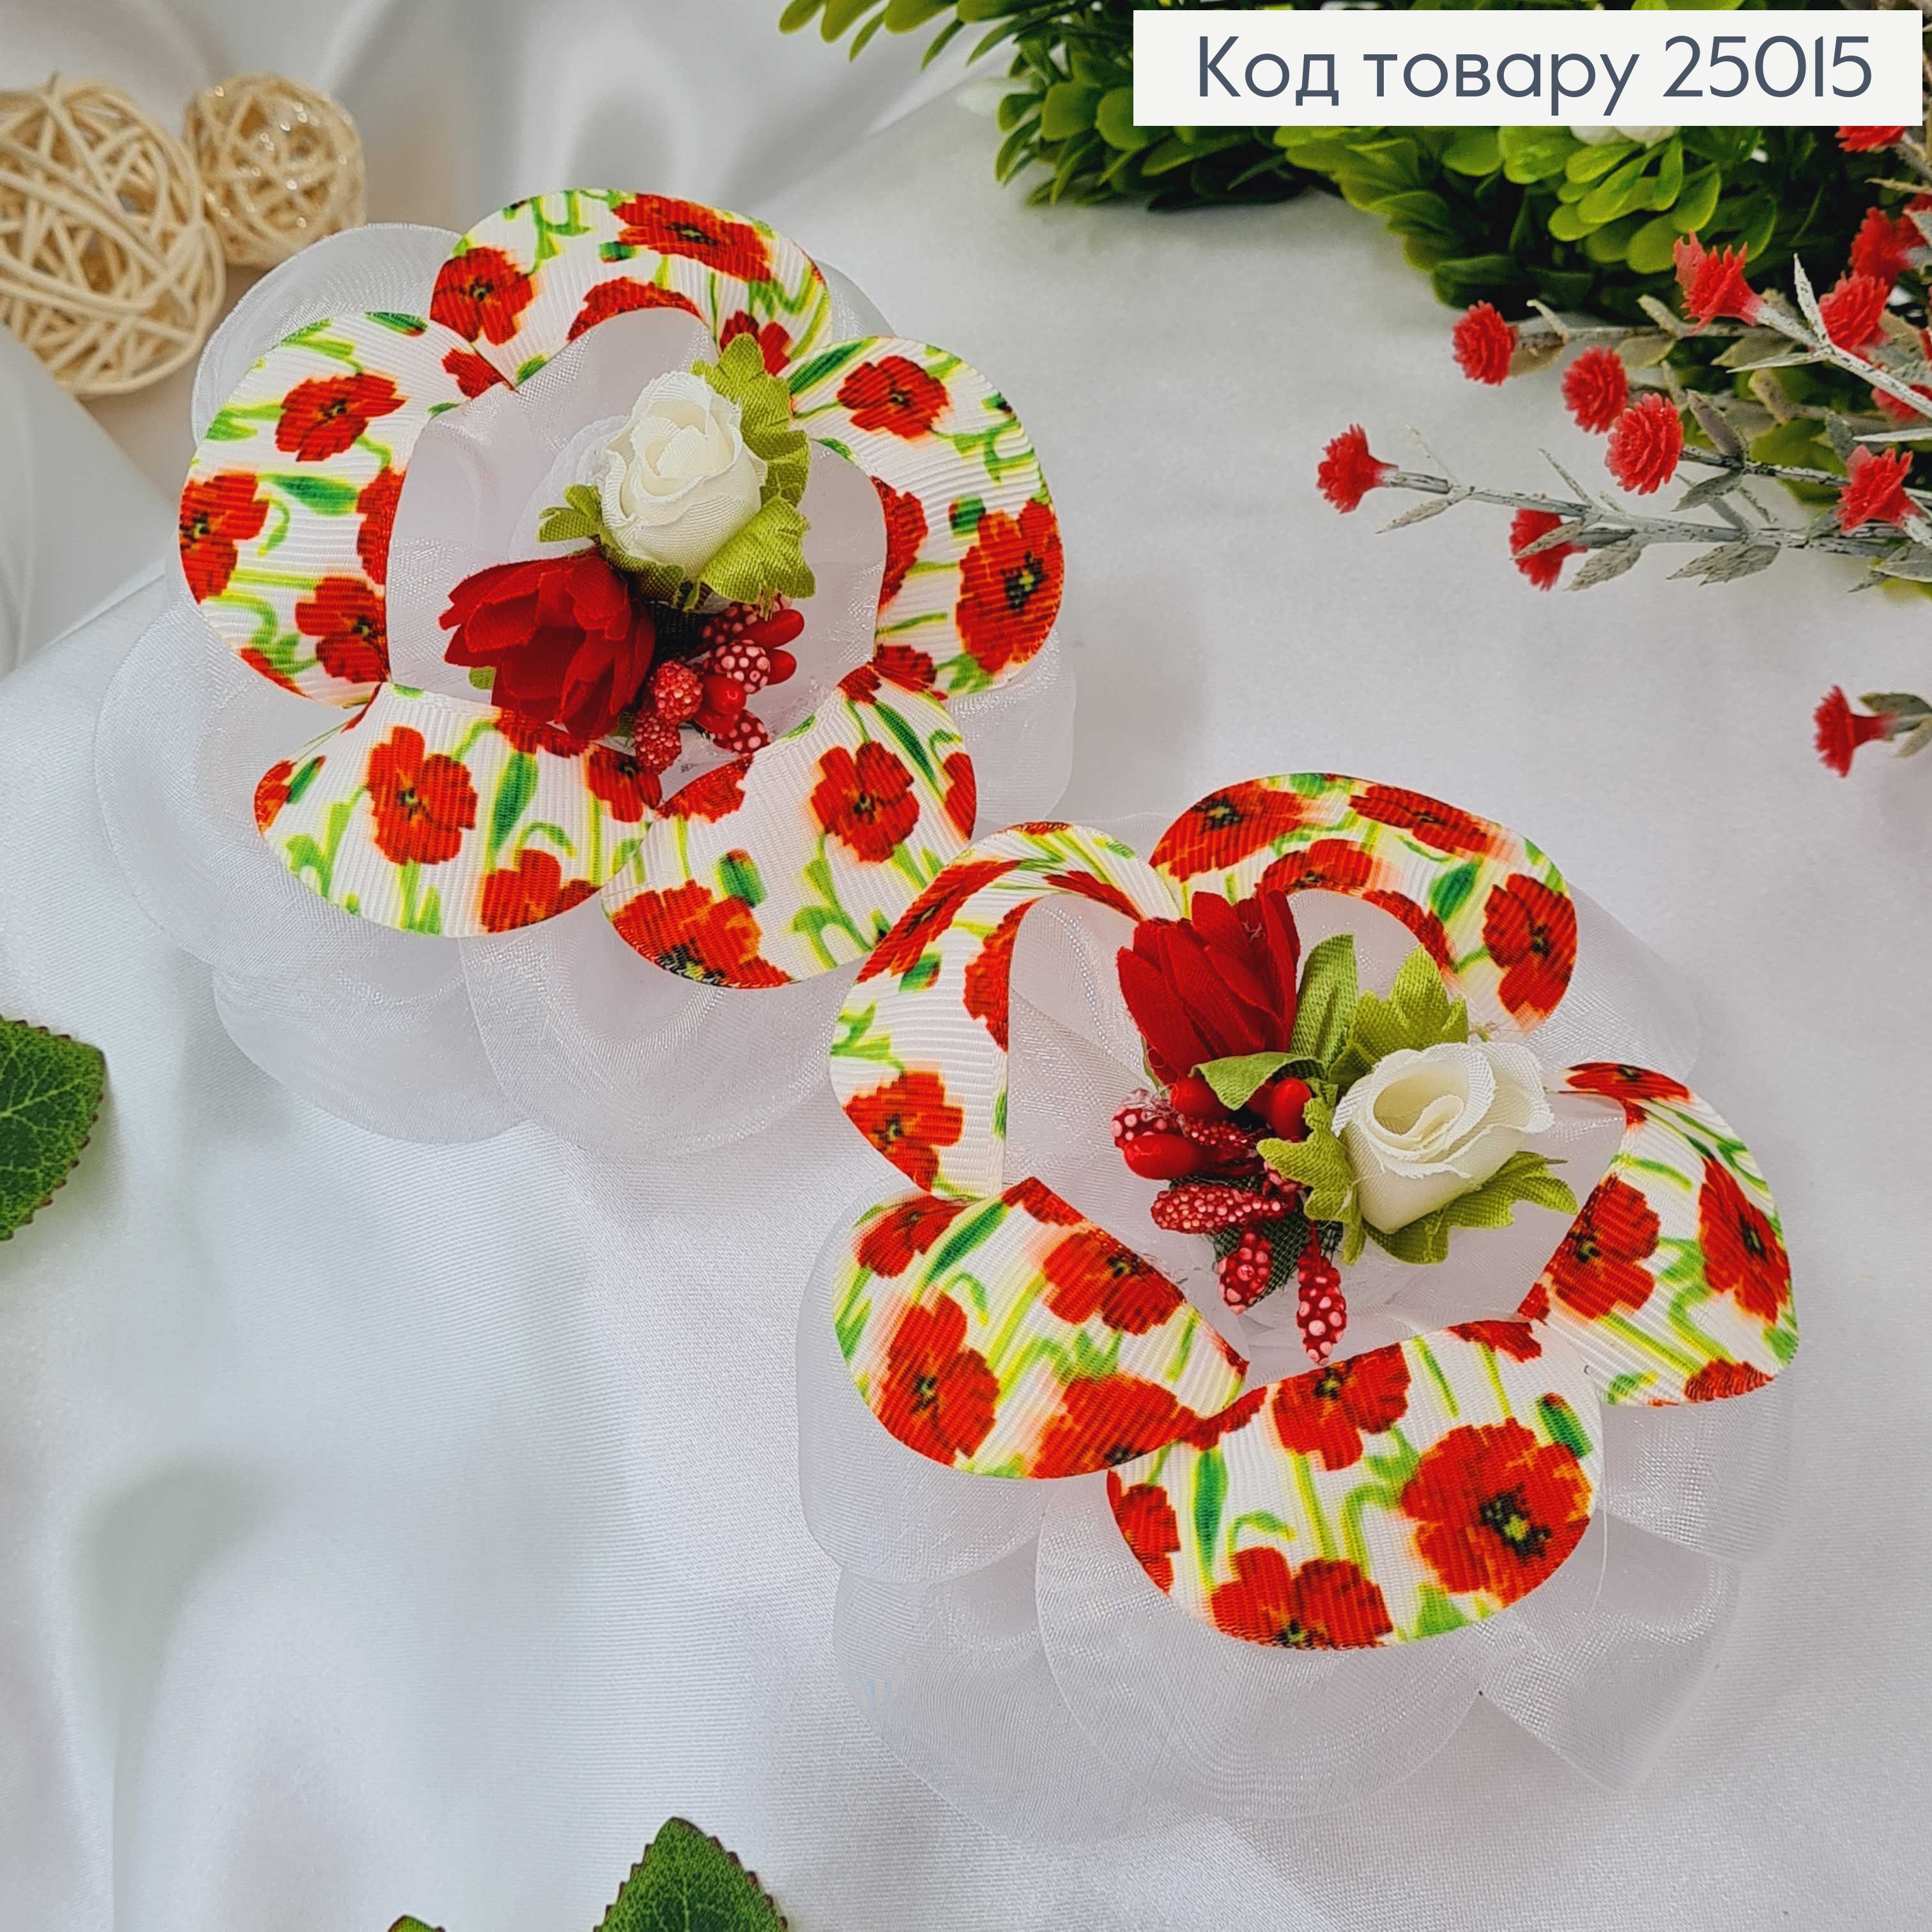 Резинка Бант, Украинский мотив с красным цветком,10см, Украина 25015 фото 2